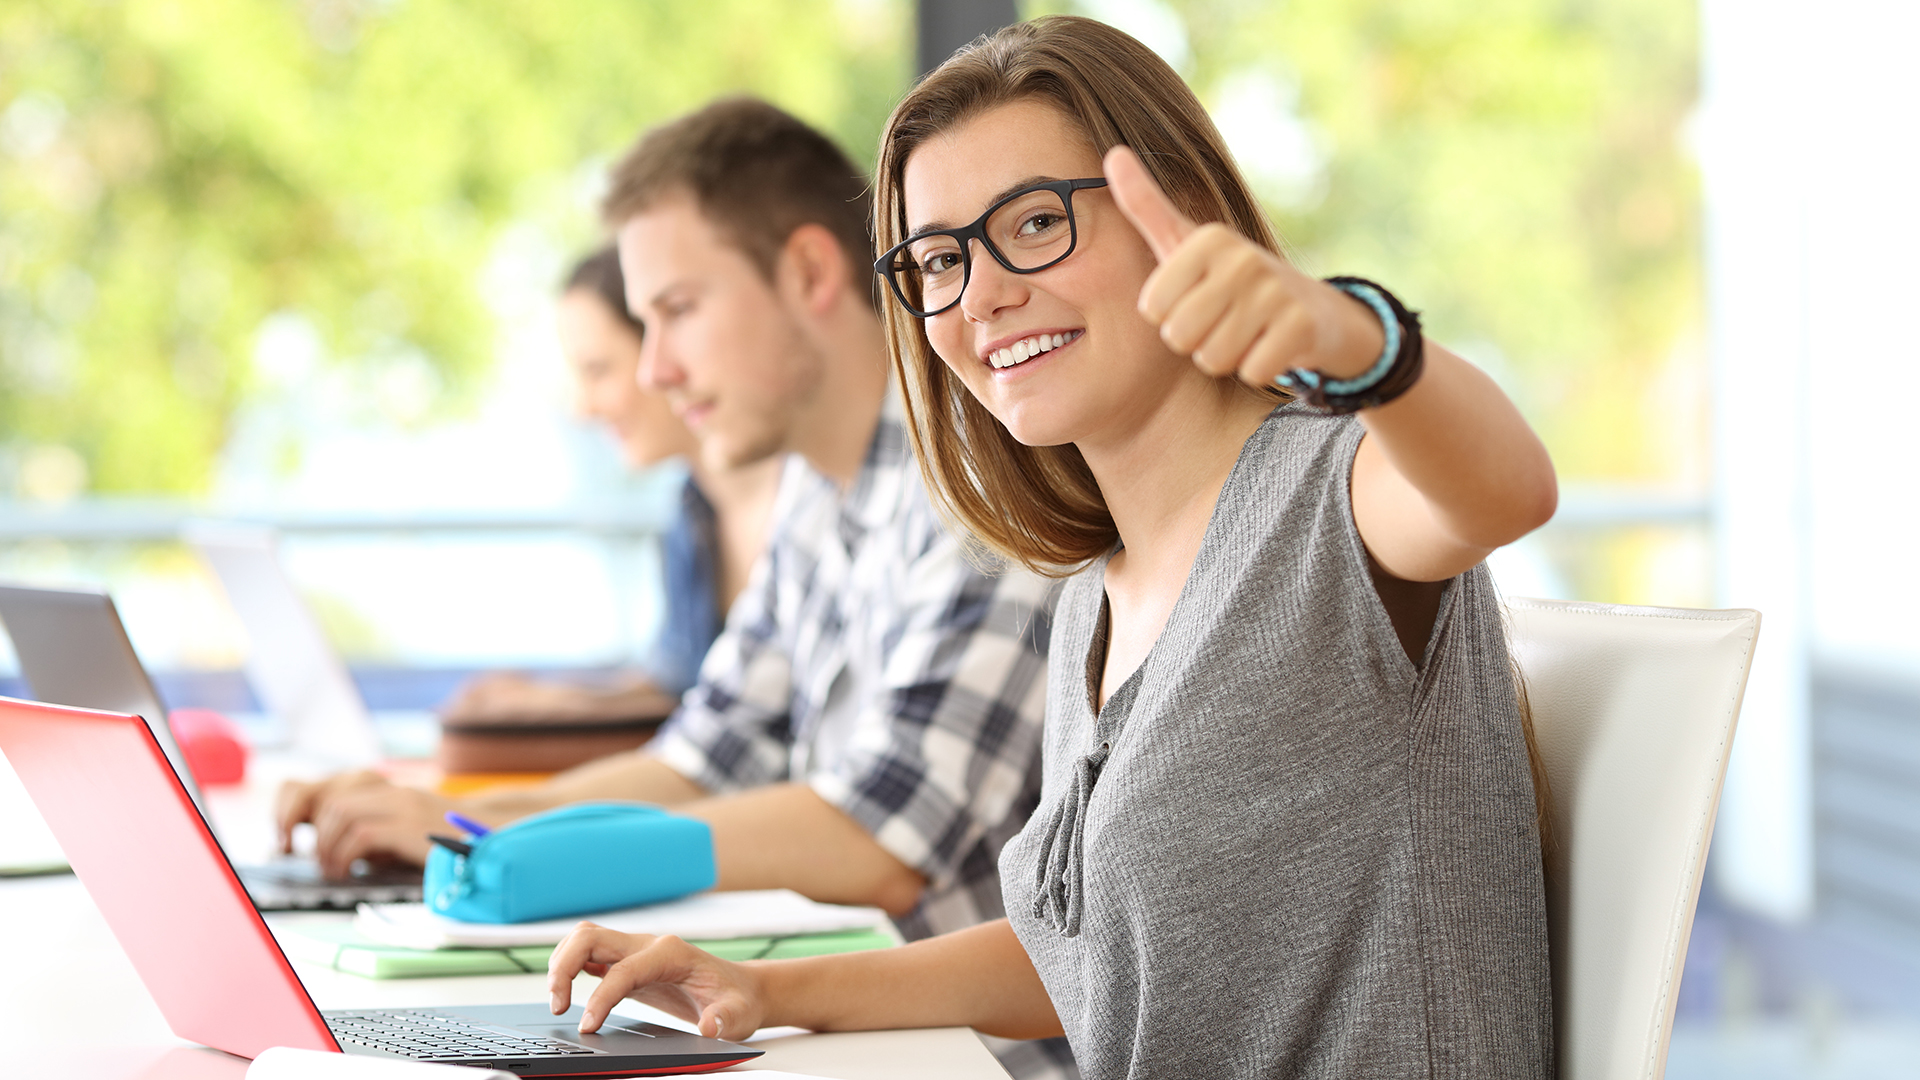 Glückliche Studentin mit Brille sitzt vor ihrem Laptop und kann sich durch erfolgreiches Konzentrationstraining auf das Lernen konzentrieren